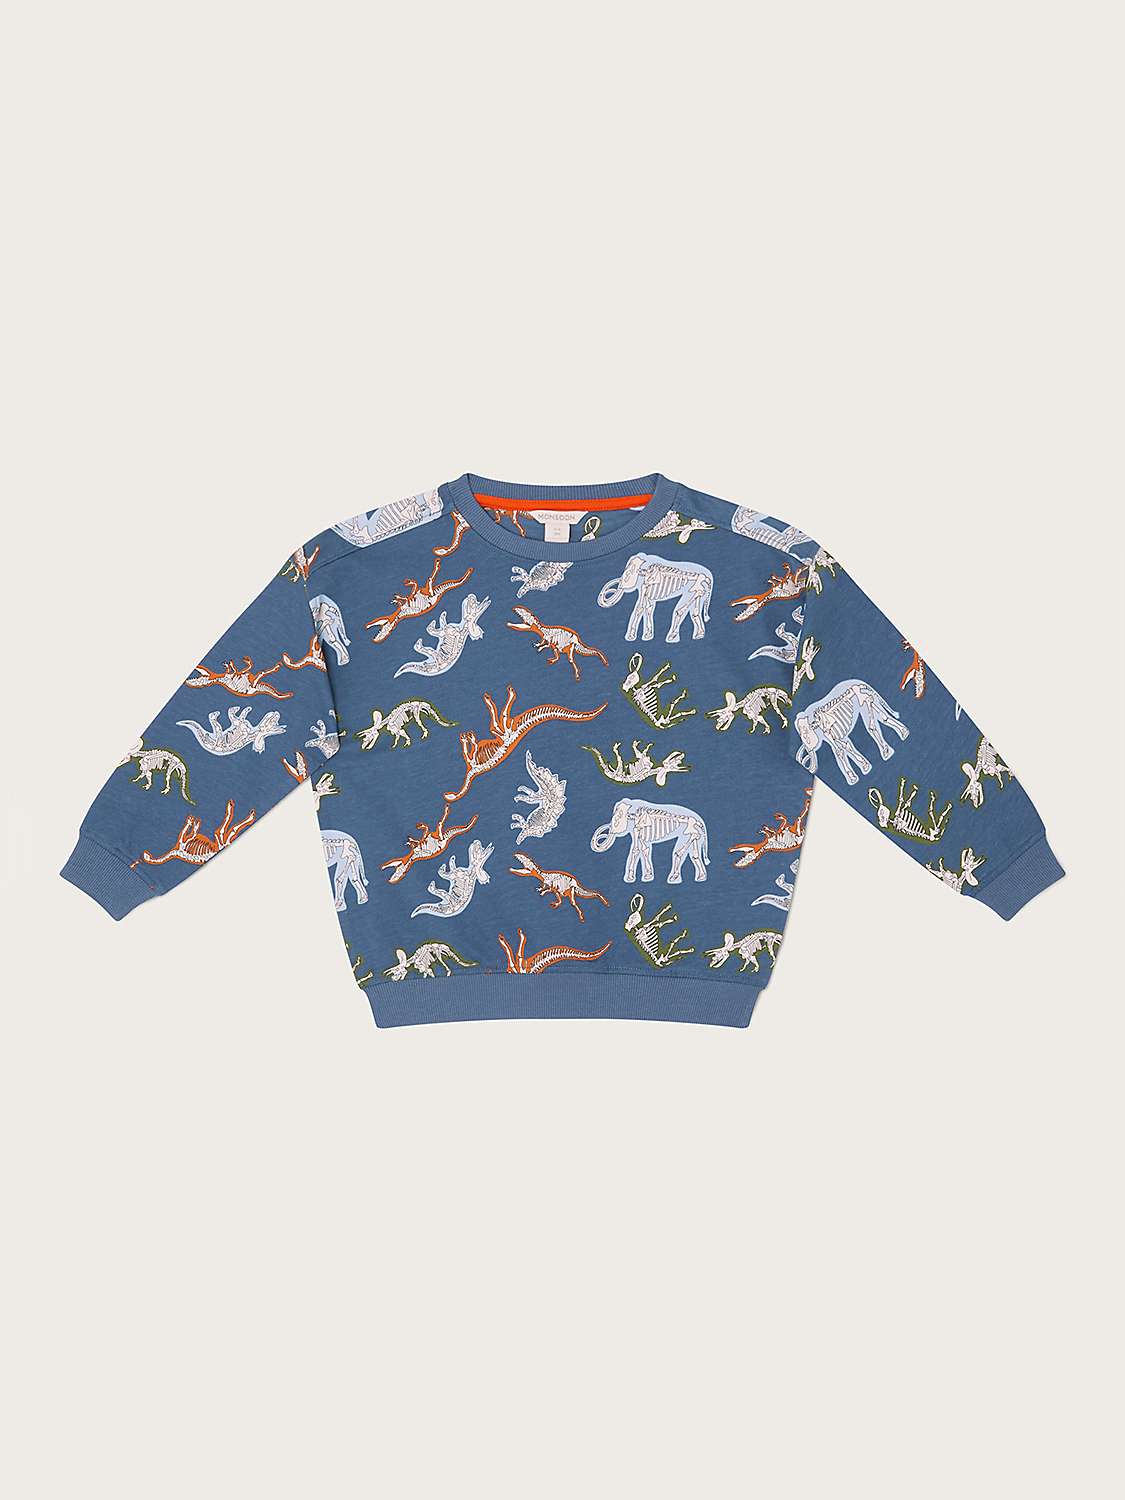 Buy Monsoon Baby Glow in the Dark Dinosaur Print Sweatshirt, Blue Online at johnlewis.com